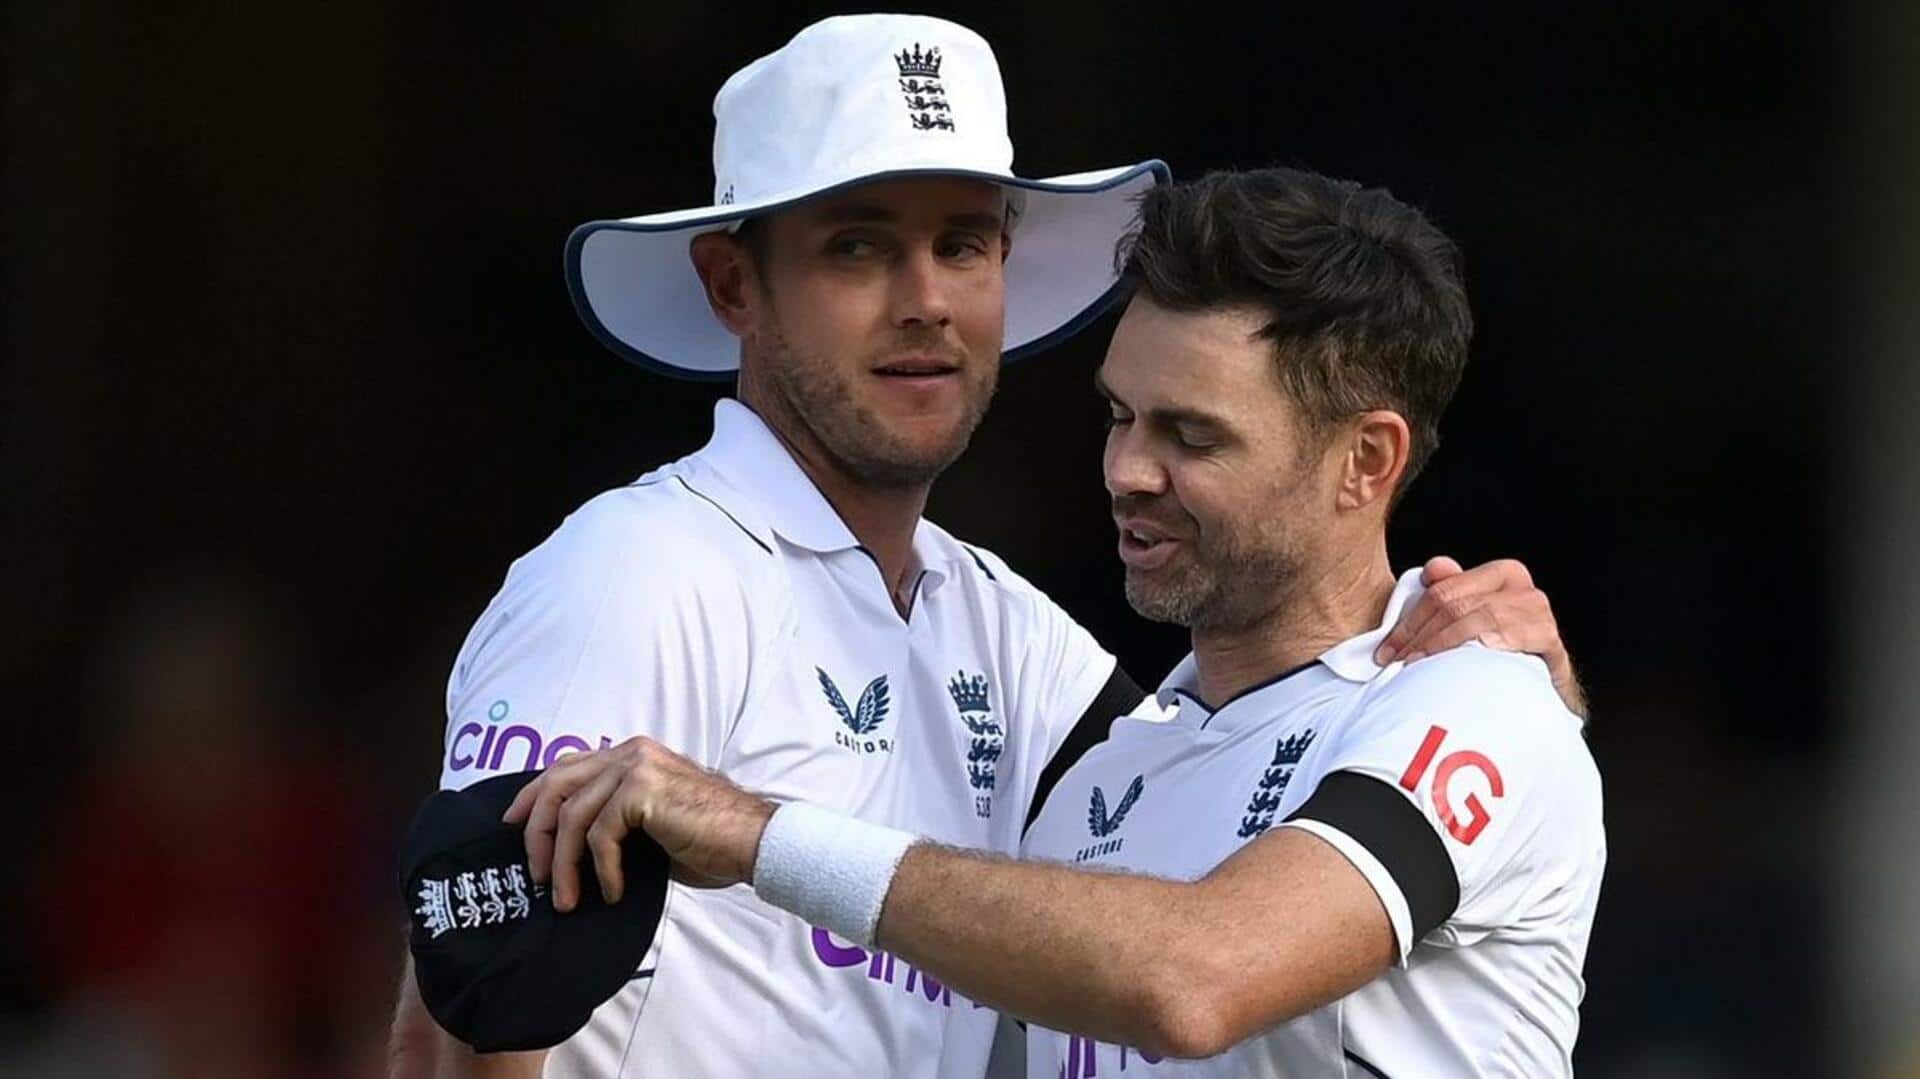 एंडरसन और ब्रॉड ने बनाया बड़ा रिकॉर्ड, साथ खेले टेस्ट मैचों में पूरे किए 1,000 विकेट